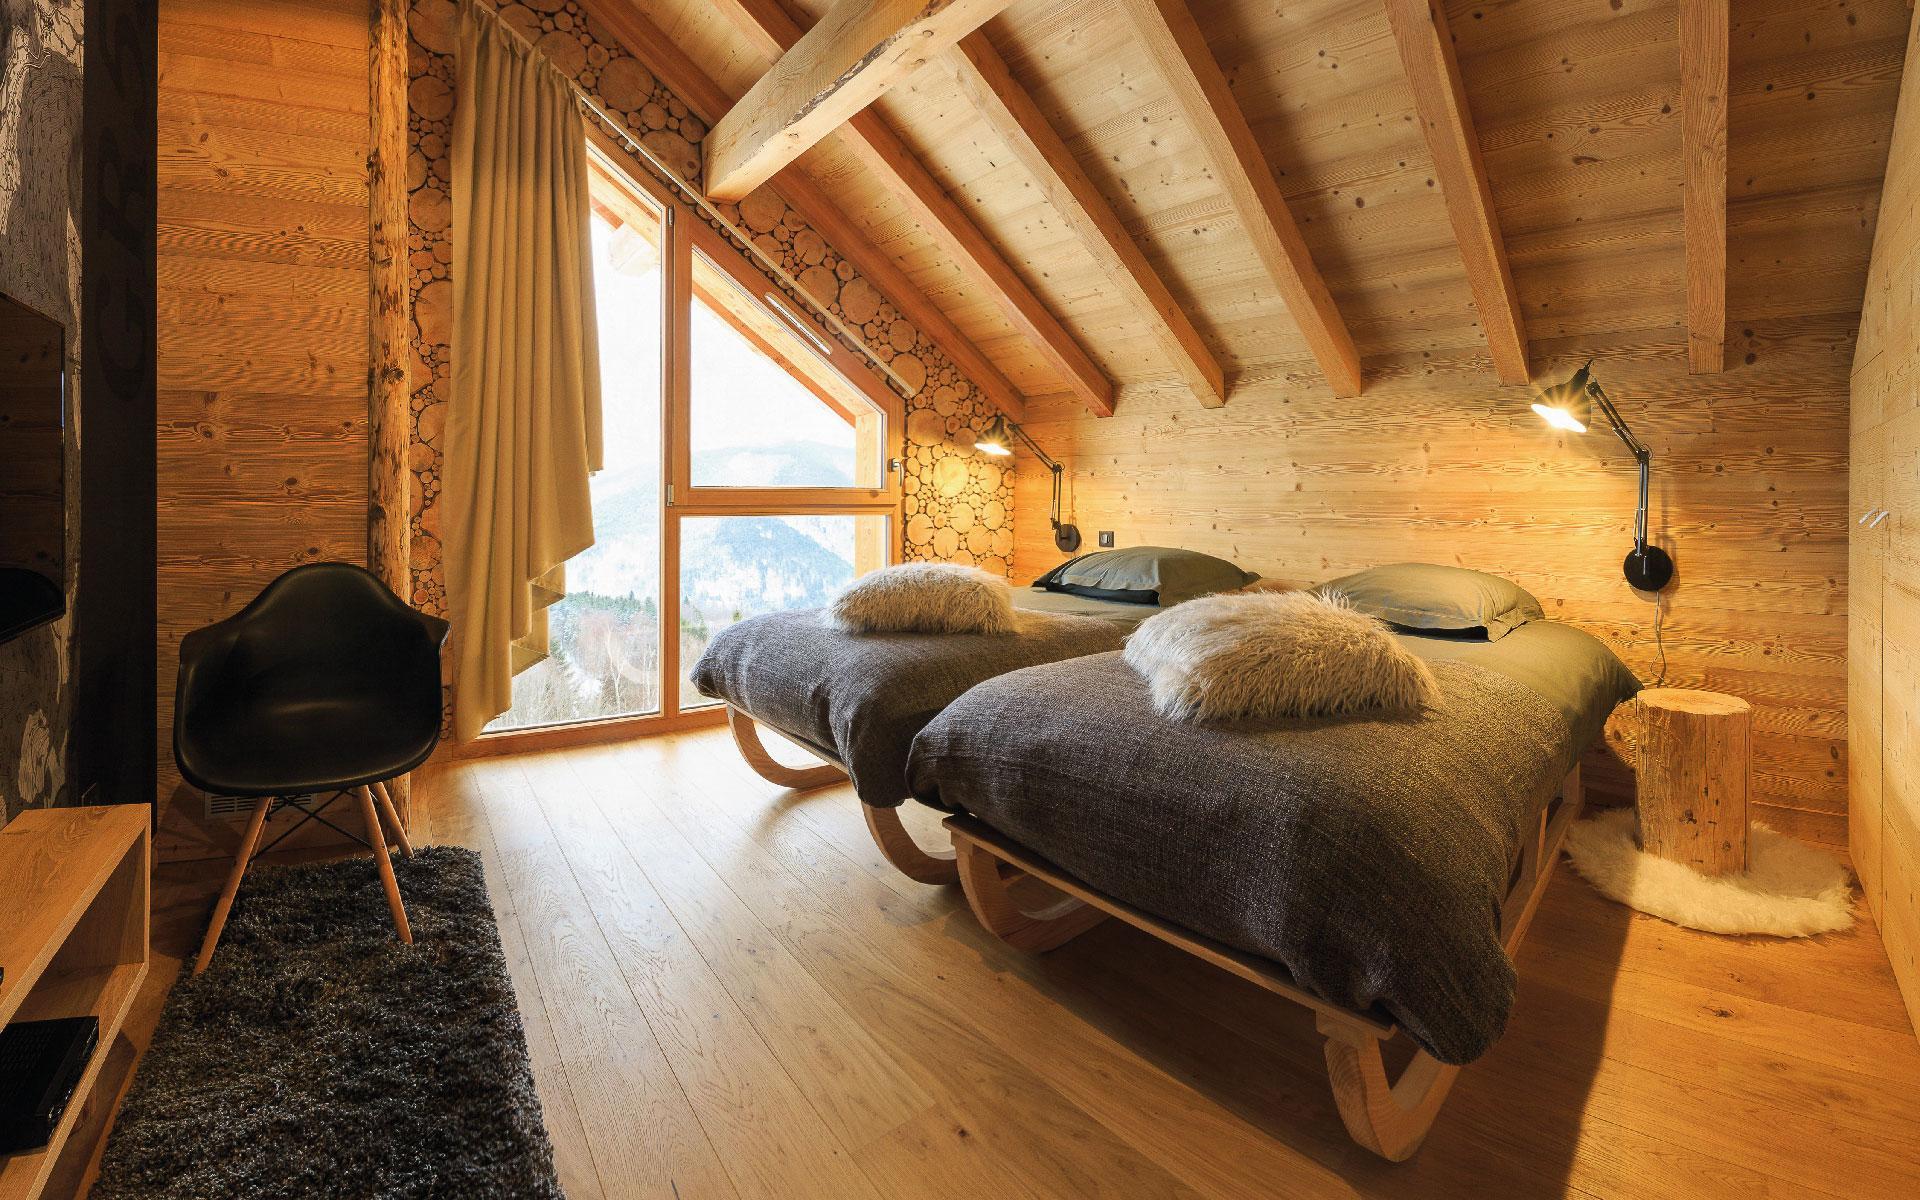 Chambre chalet bois nature avec vue imprenable sur les Vosges et la vallée de Munster.